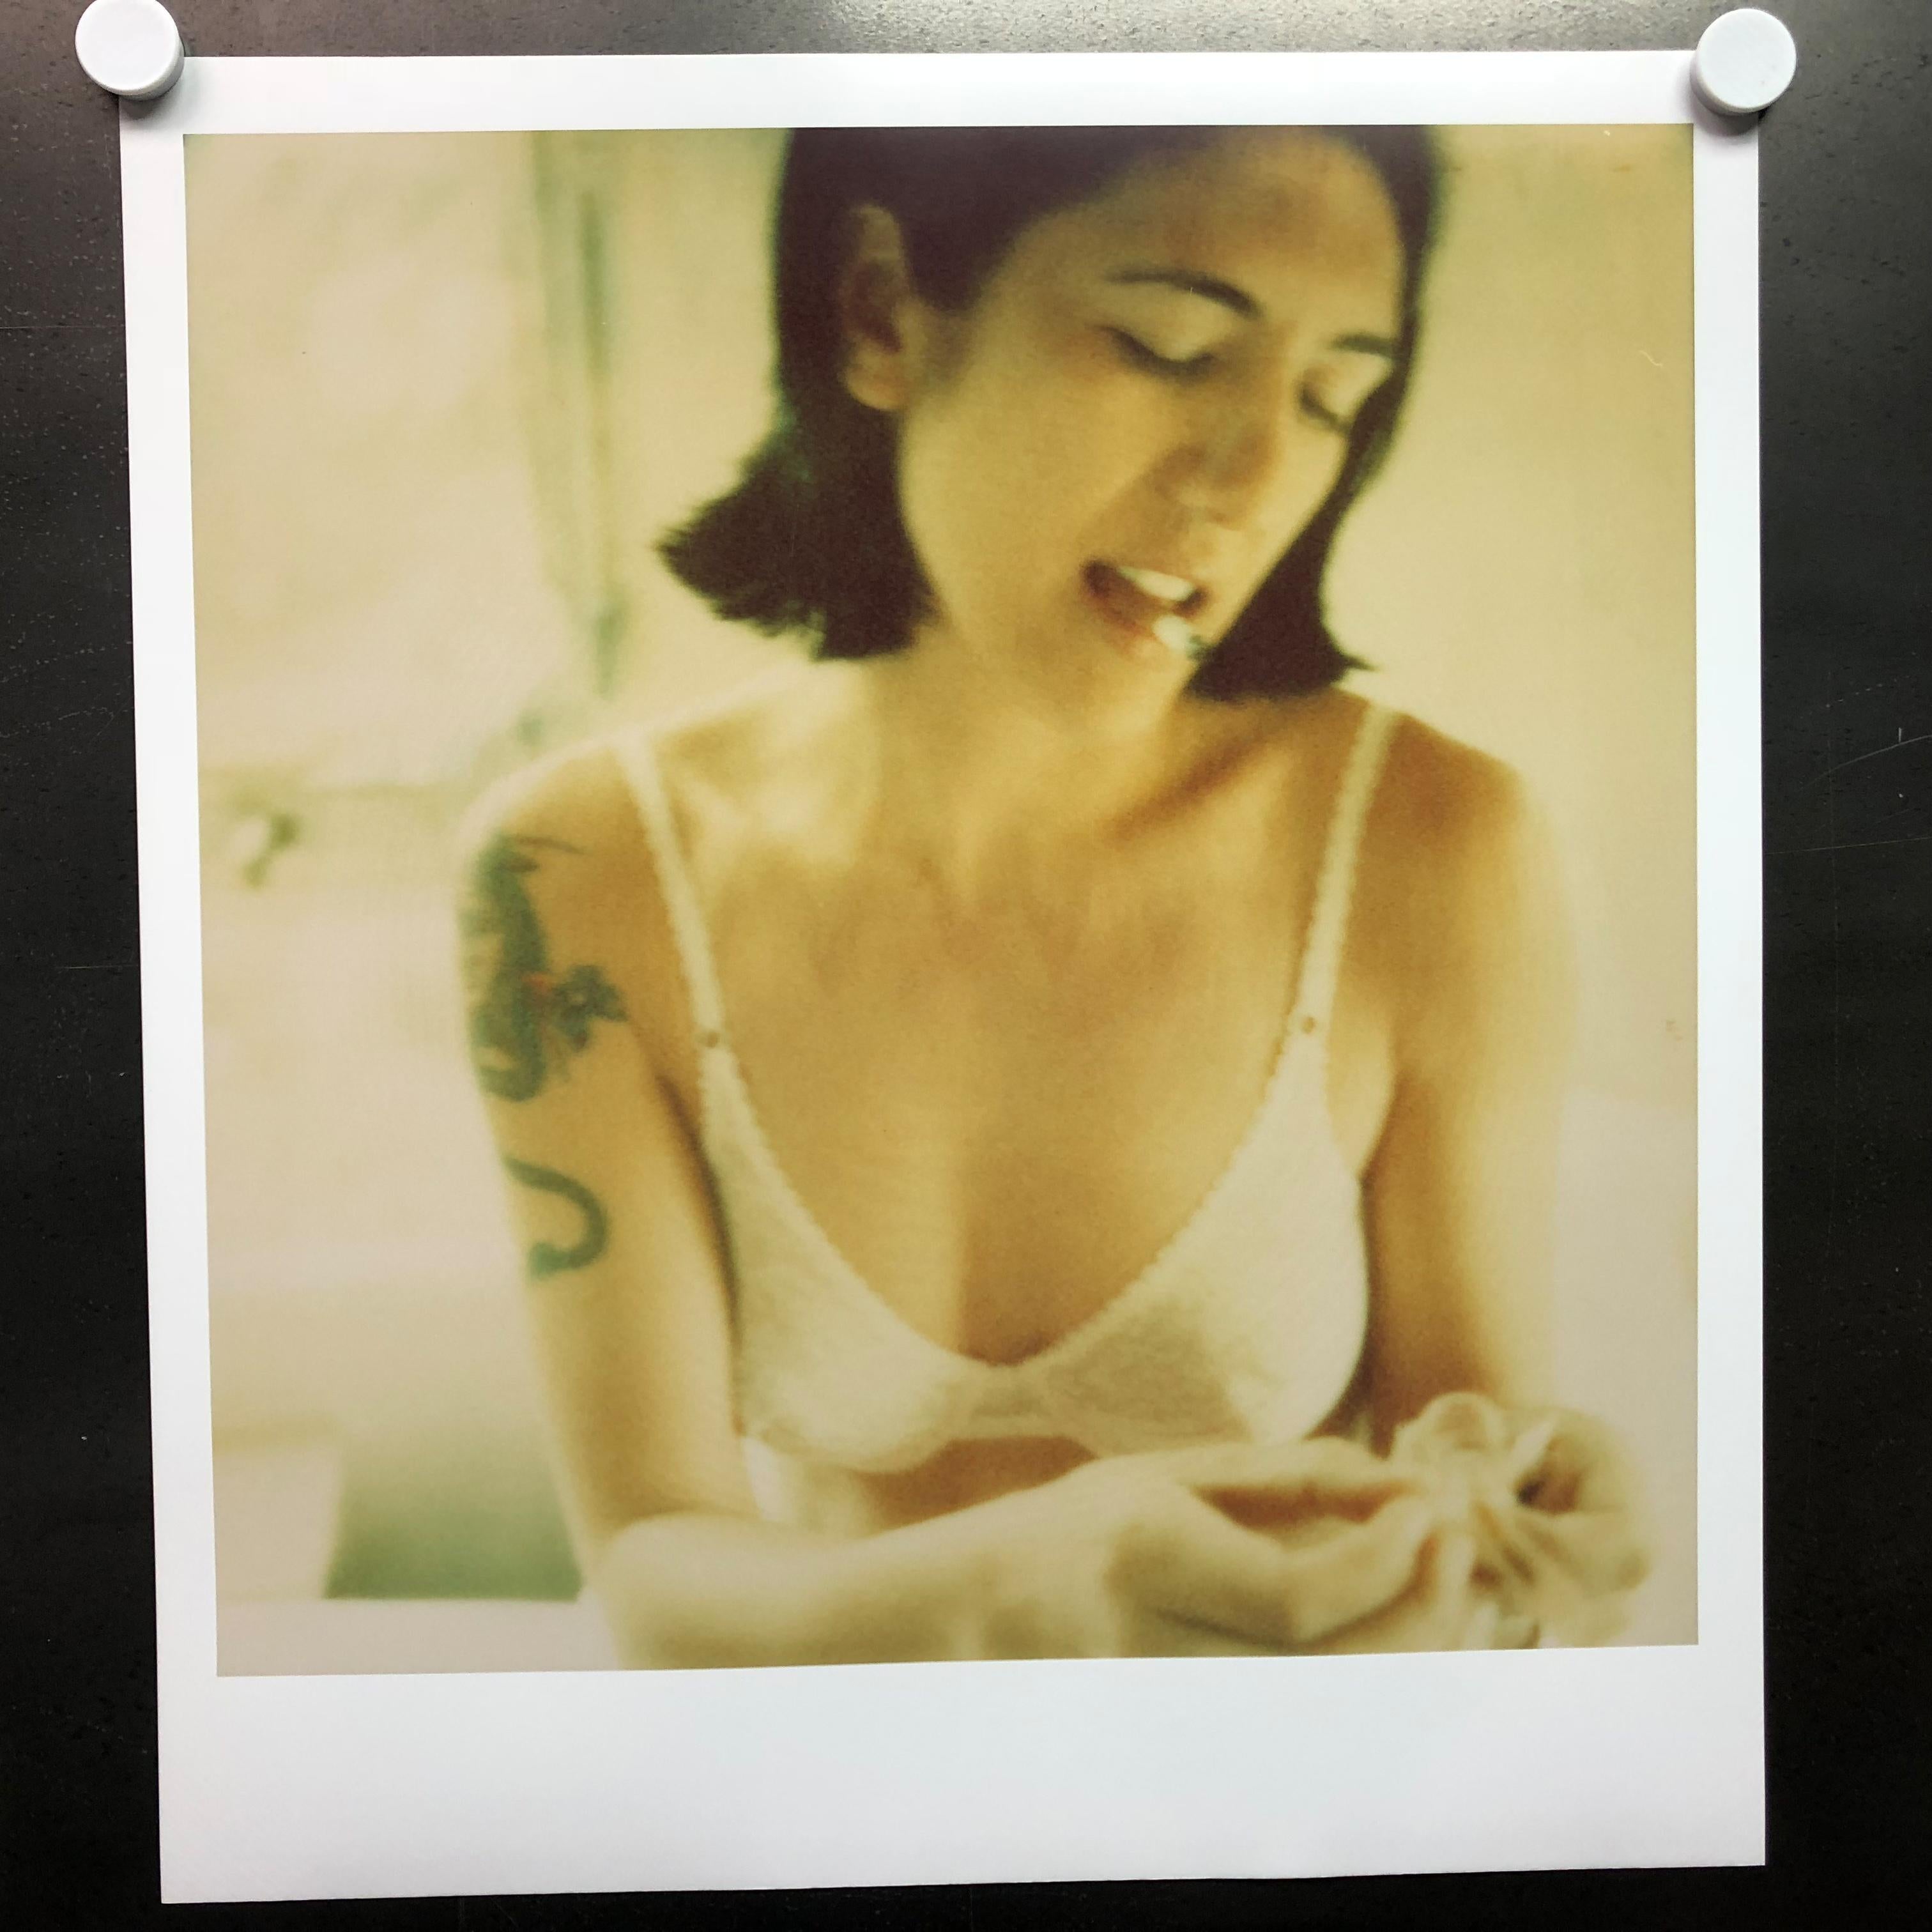 Untitled 02 (Saigon), analoger C-Print - 21. Jahrhundert, Contemporary, Polaroid – Photograph von Stefanie Schneider